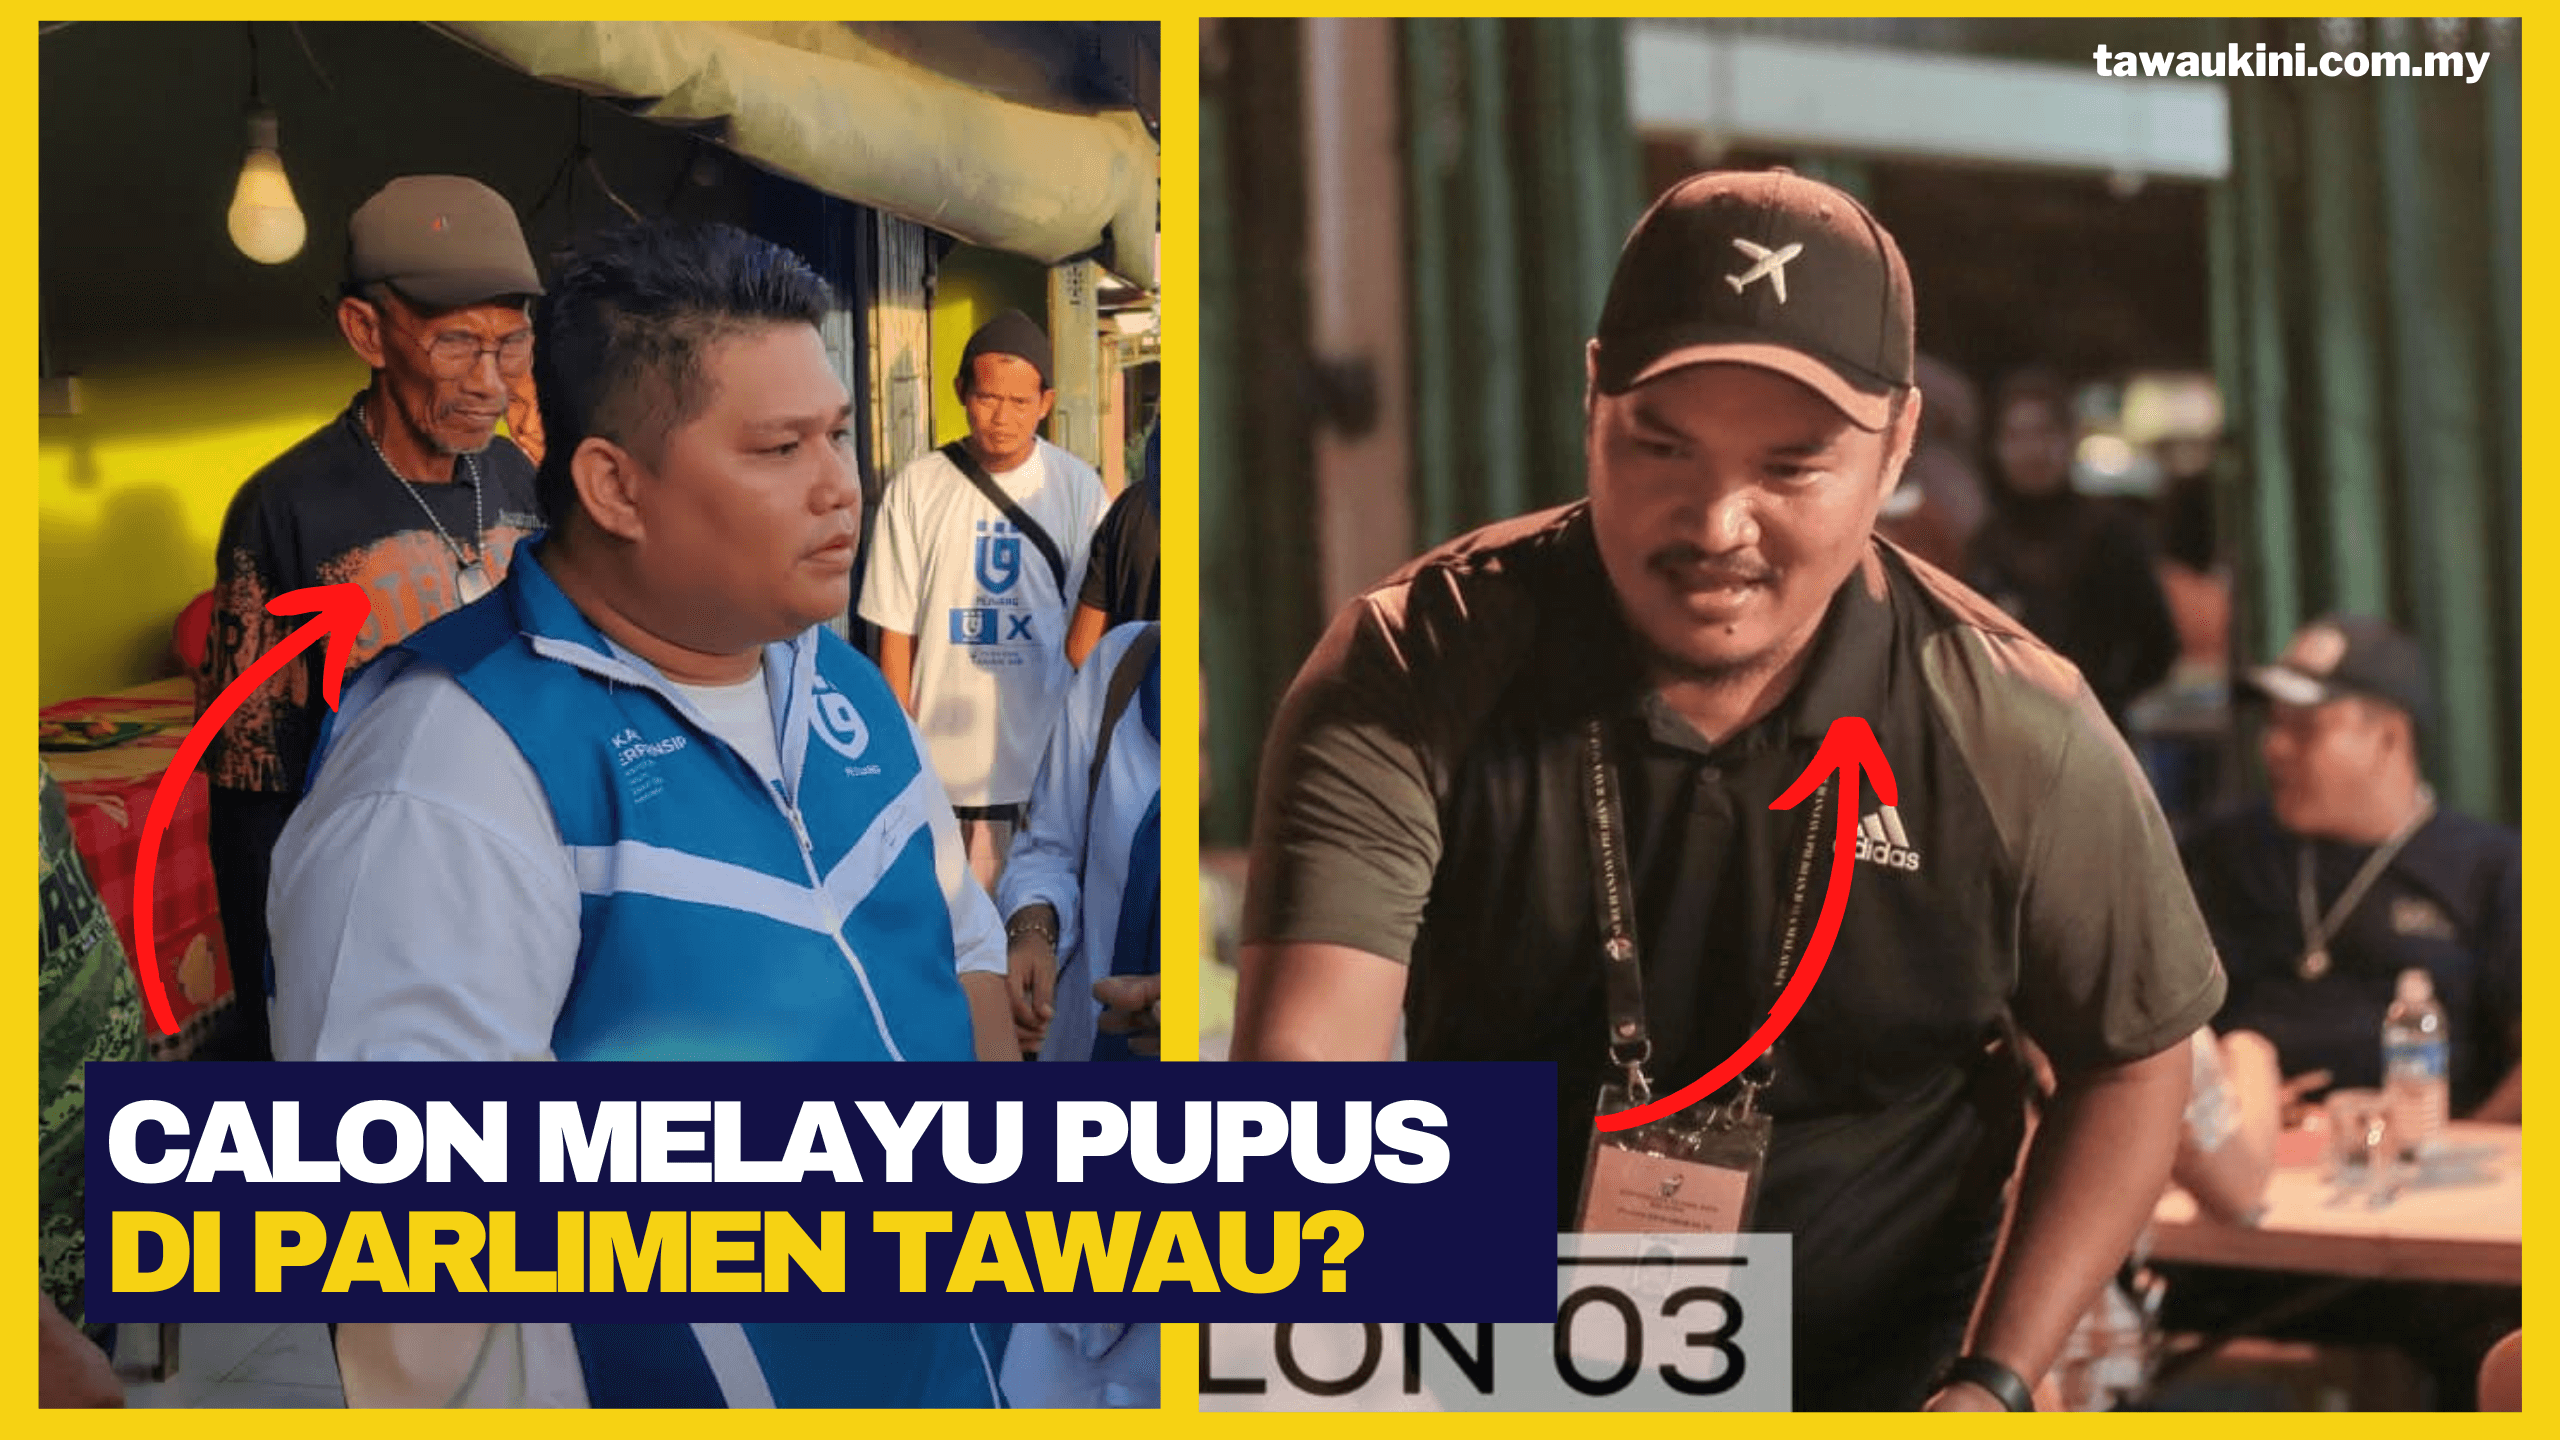 Calon Melayu Di Parlimen Tawau Pupus?